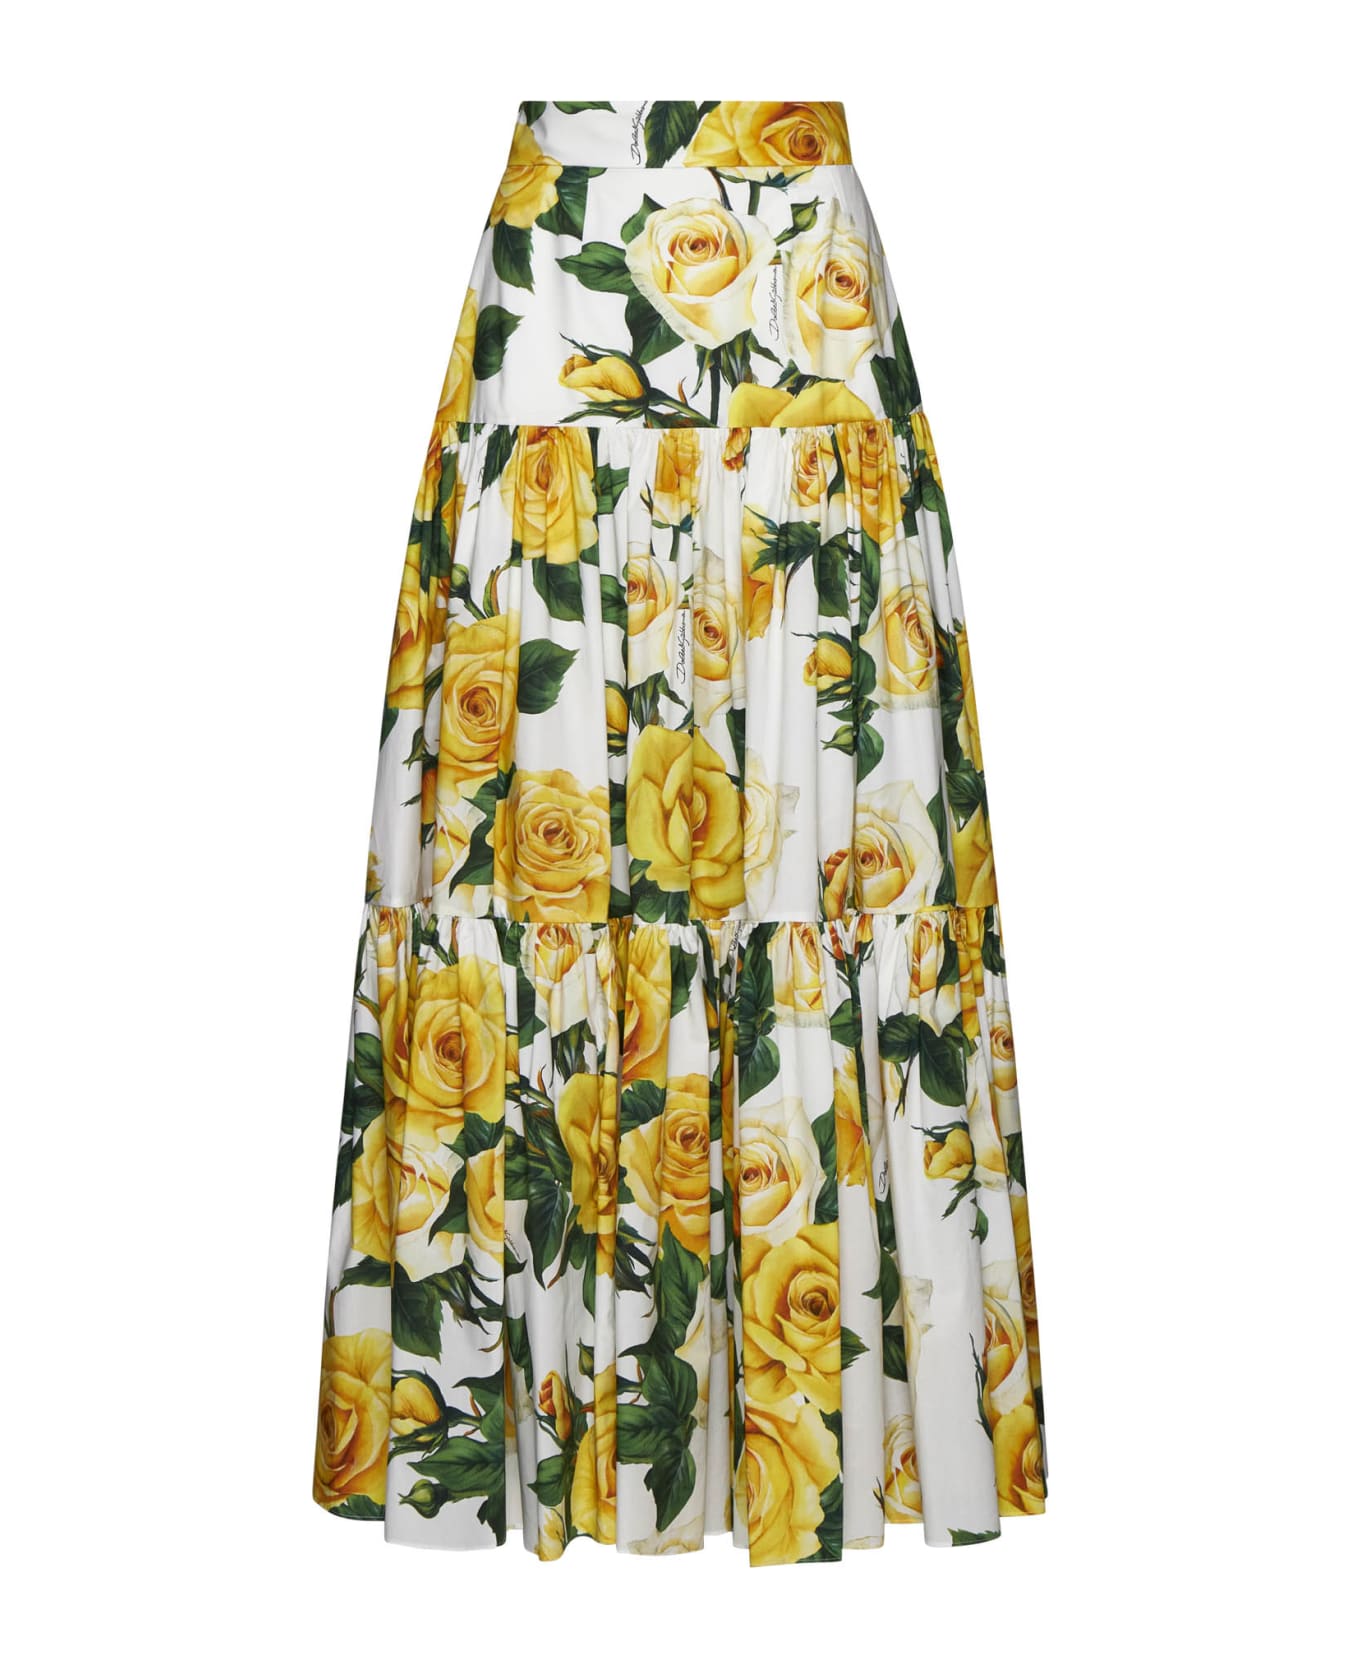 Dolce & Gabbana Pleated Midi Skirt - Rose gialle f.b.nat